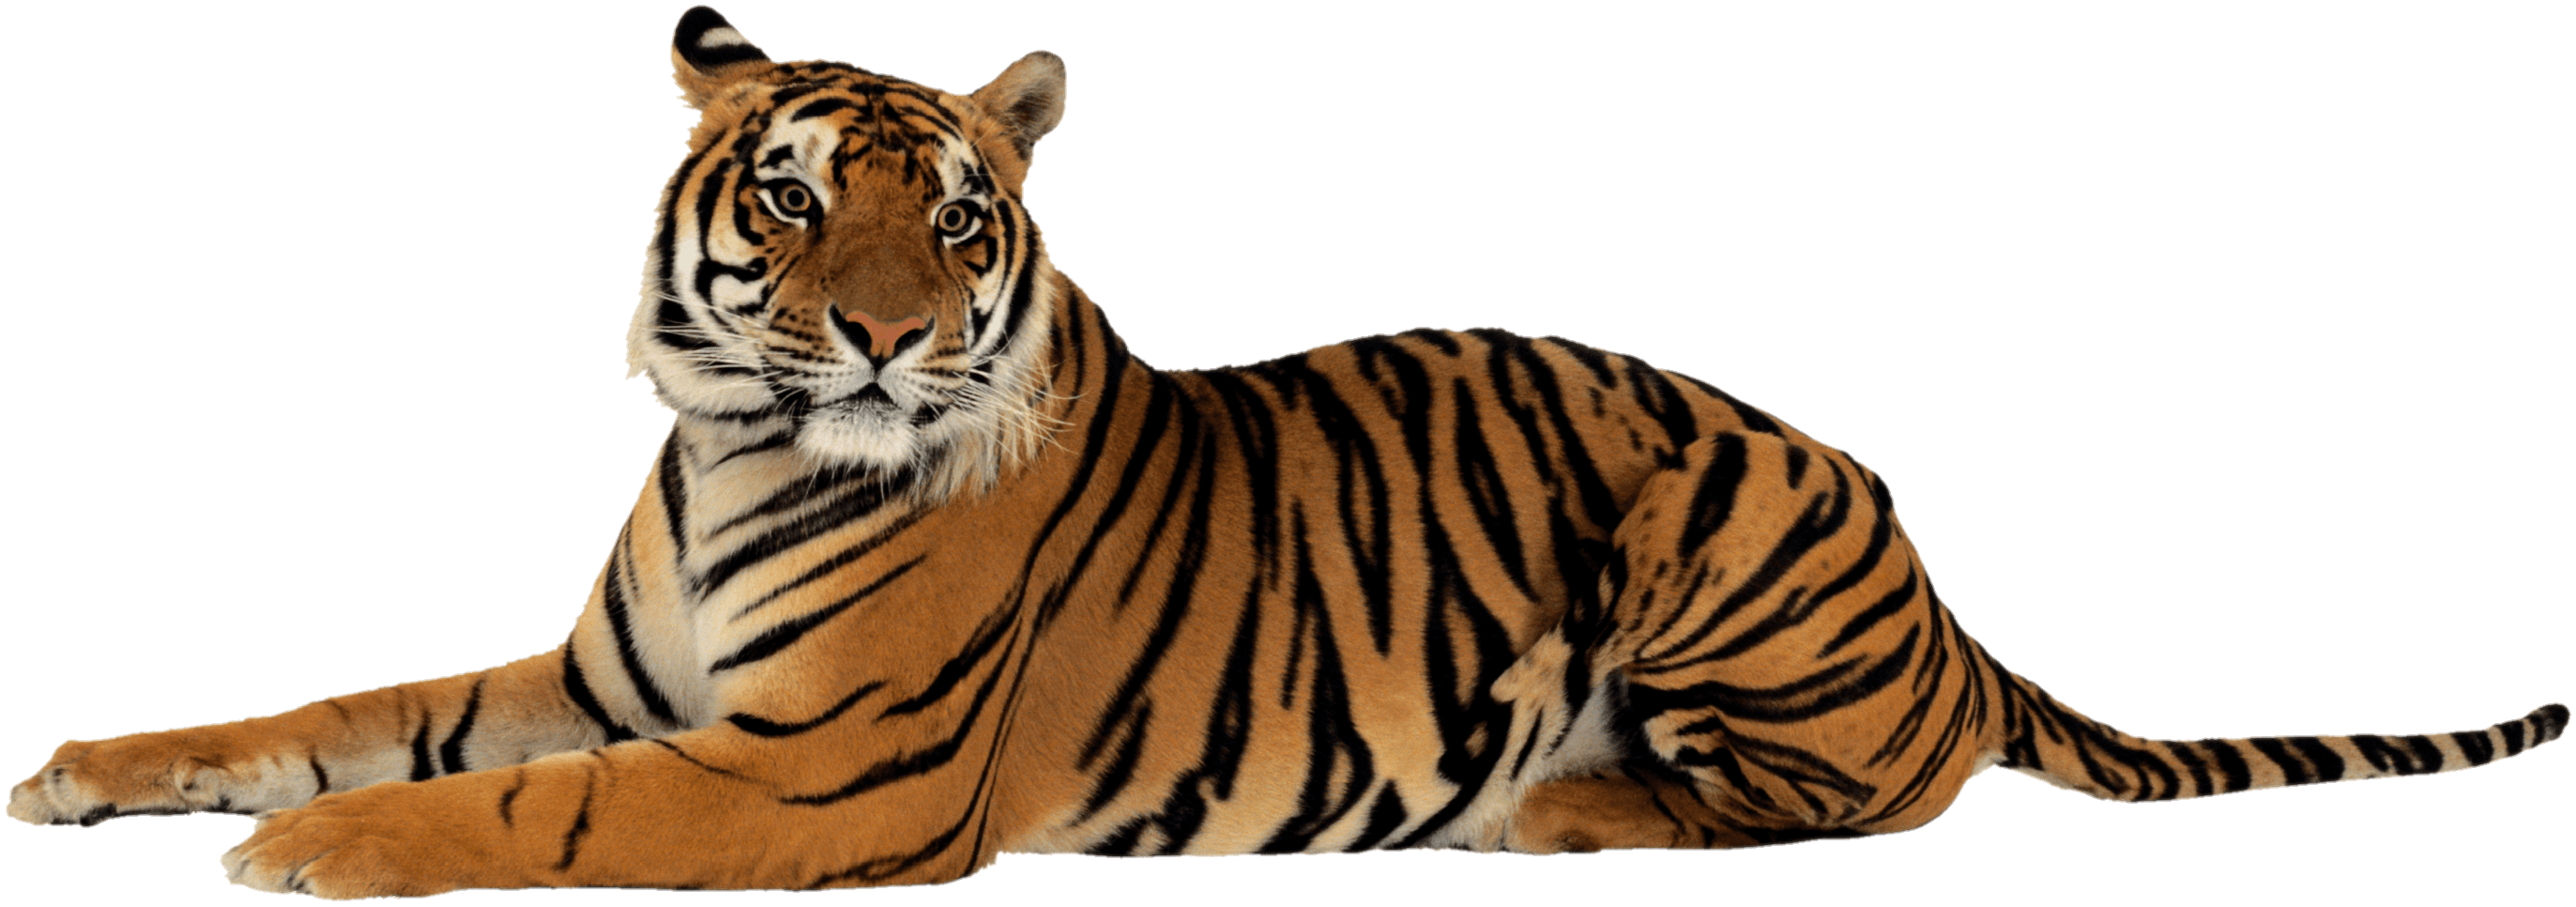 tiger-31